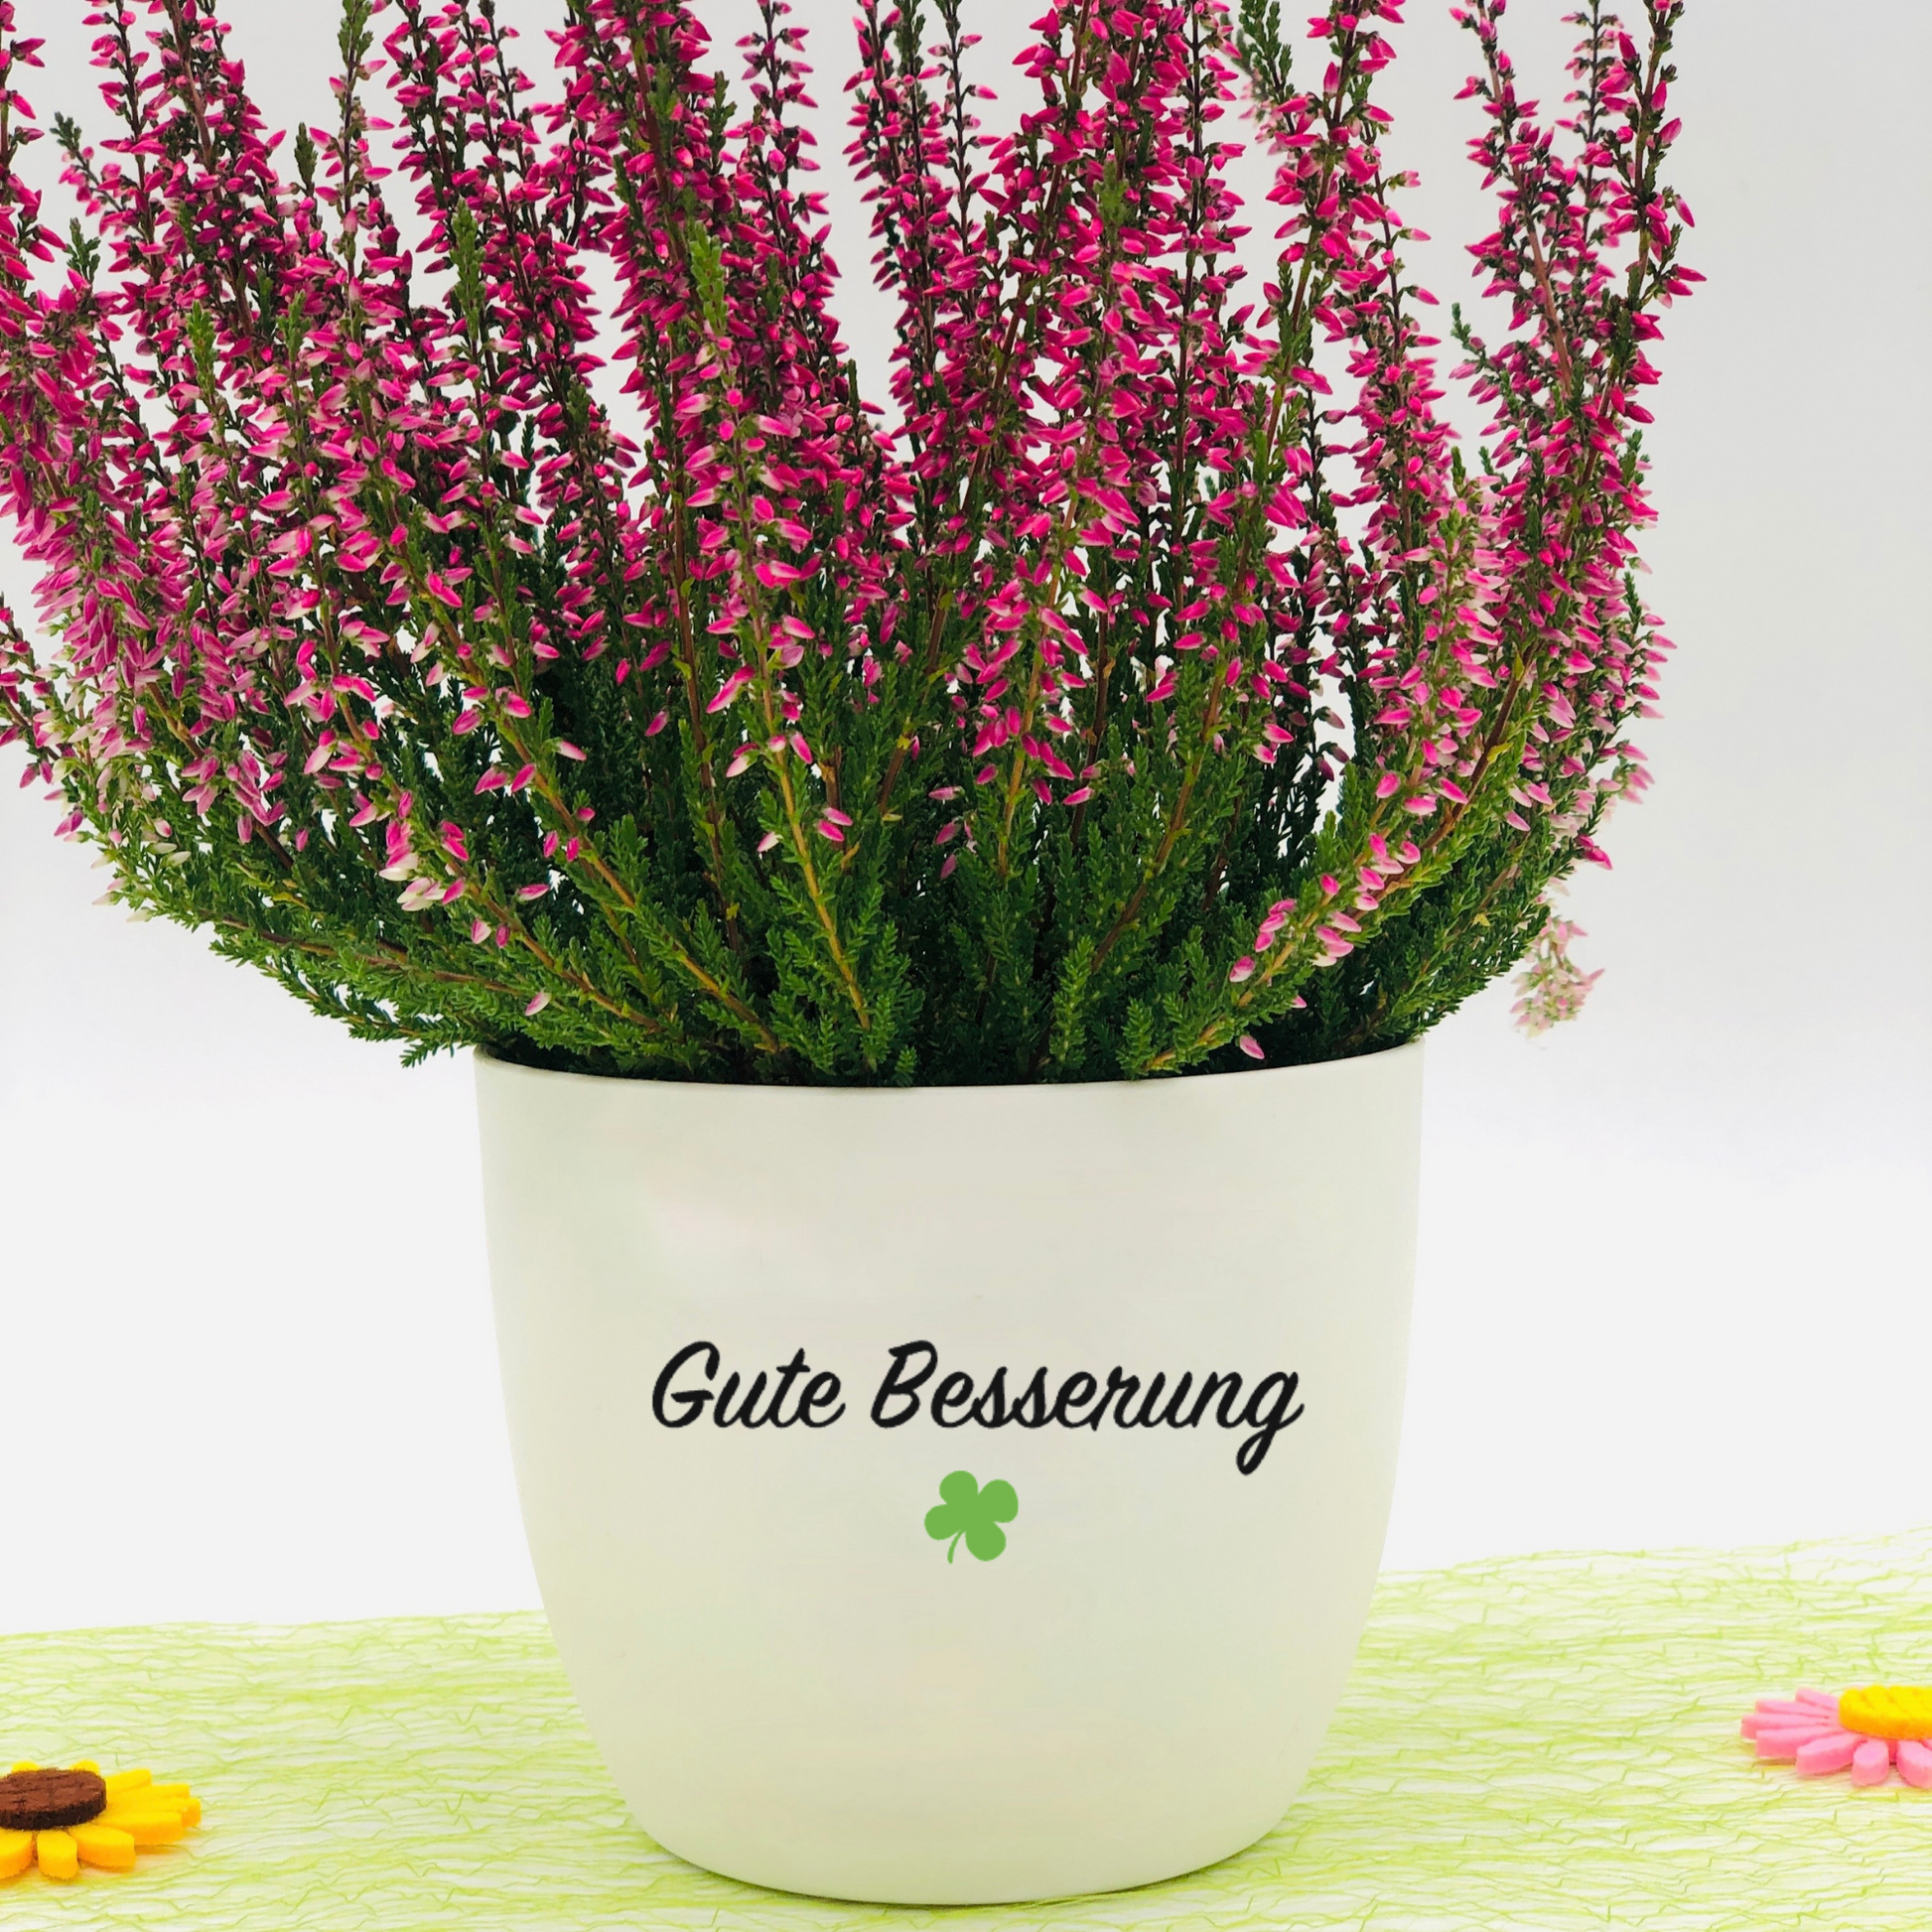 Aufkleber mit positivem Spruch - Mutmacher Aufkleber - DIY Geschenkidee - Gute Besserung Aufkleber Blumentopf